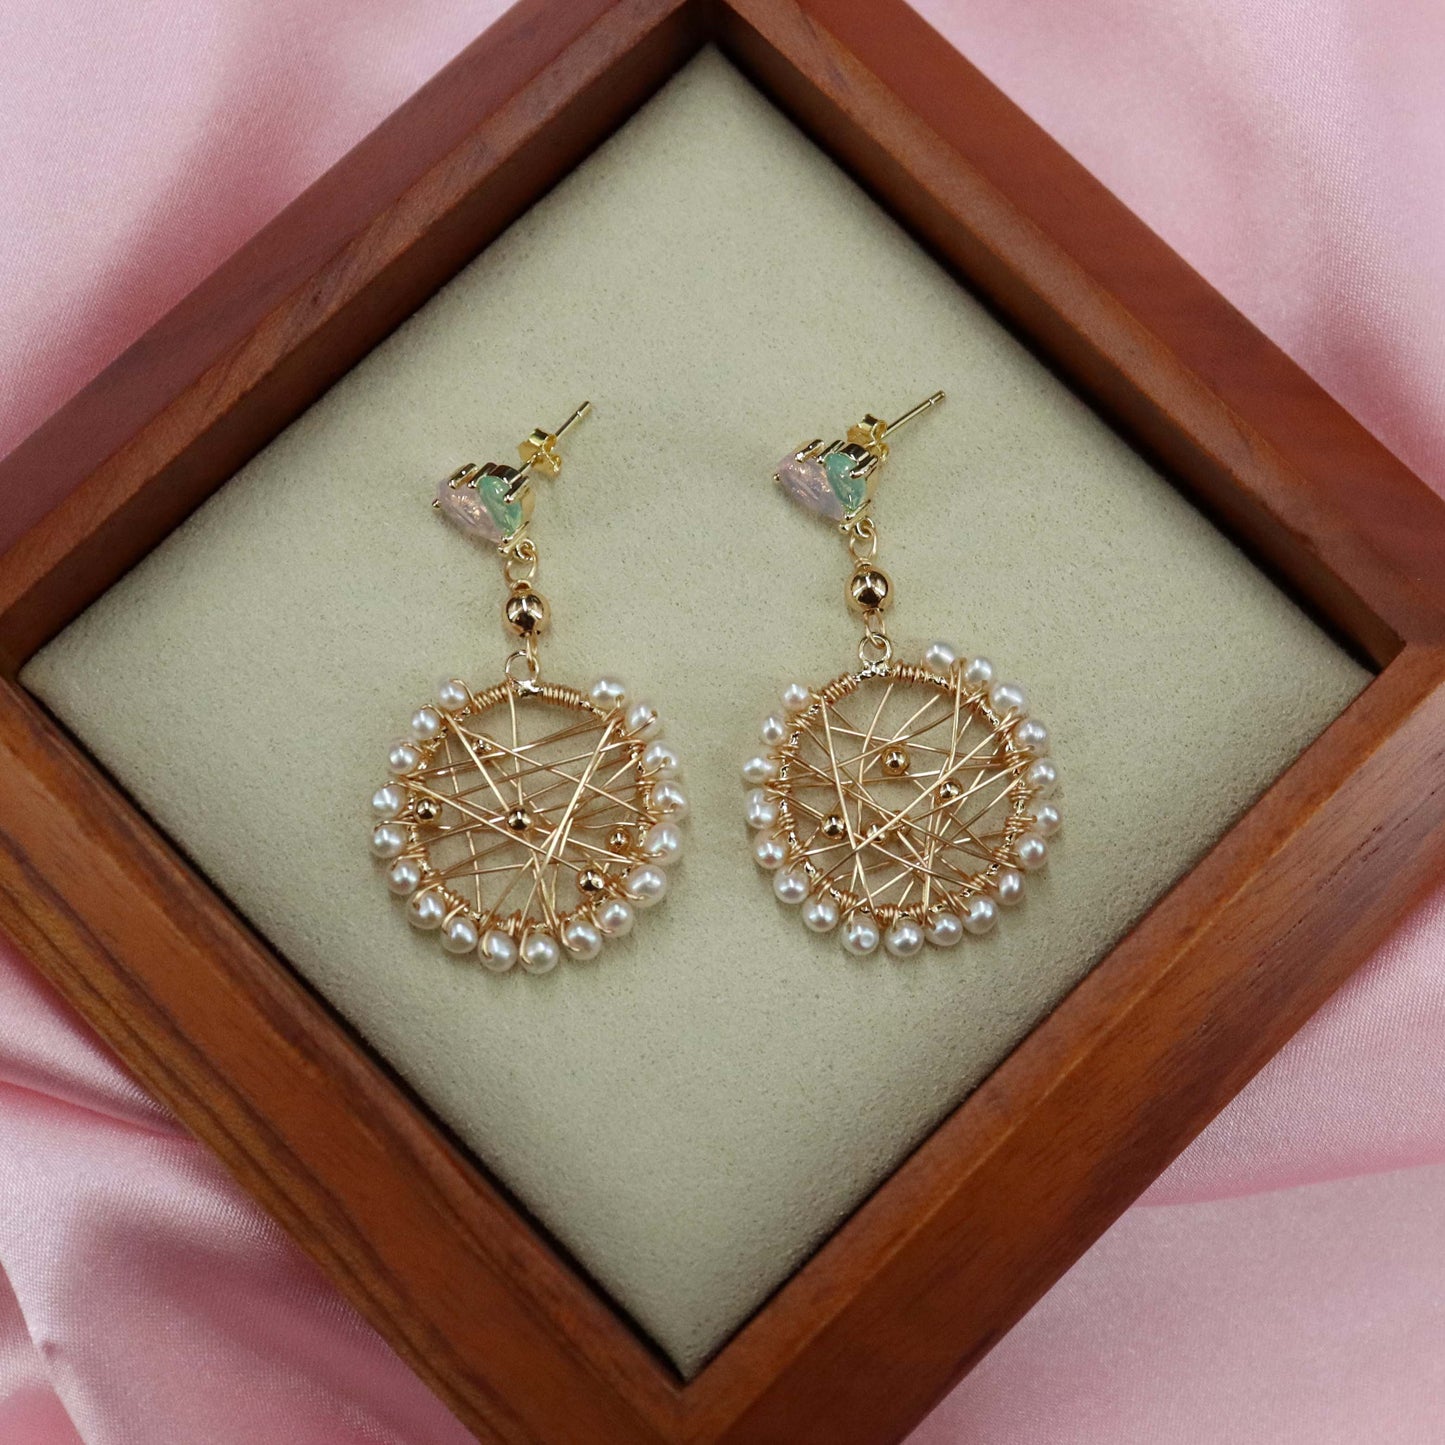 Genuine pearl dreamcatcher earrings